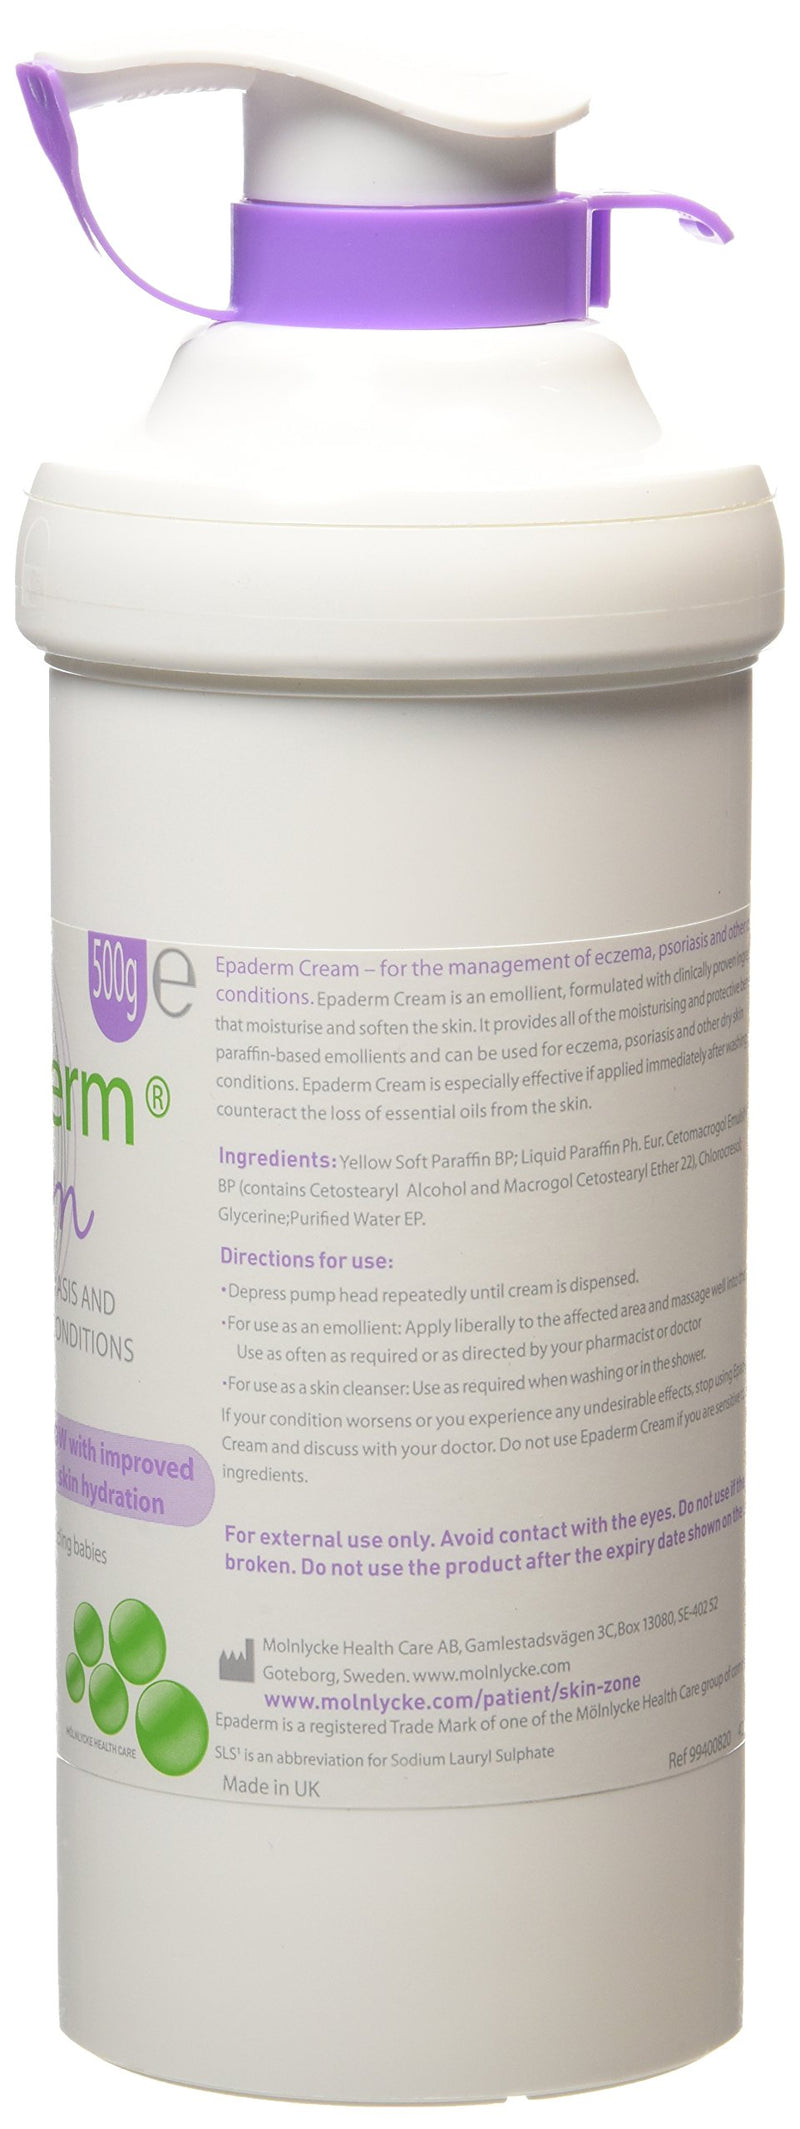 Eparderm 2in1 Cream 500g (Emollient & Skin Cleaanser) - BeesActive Australia